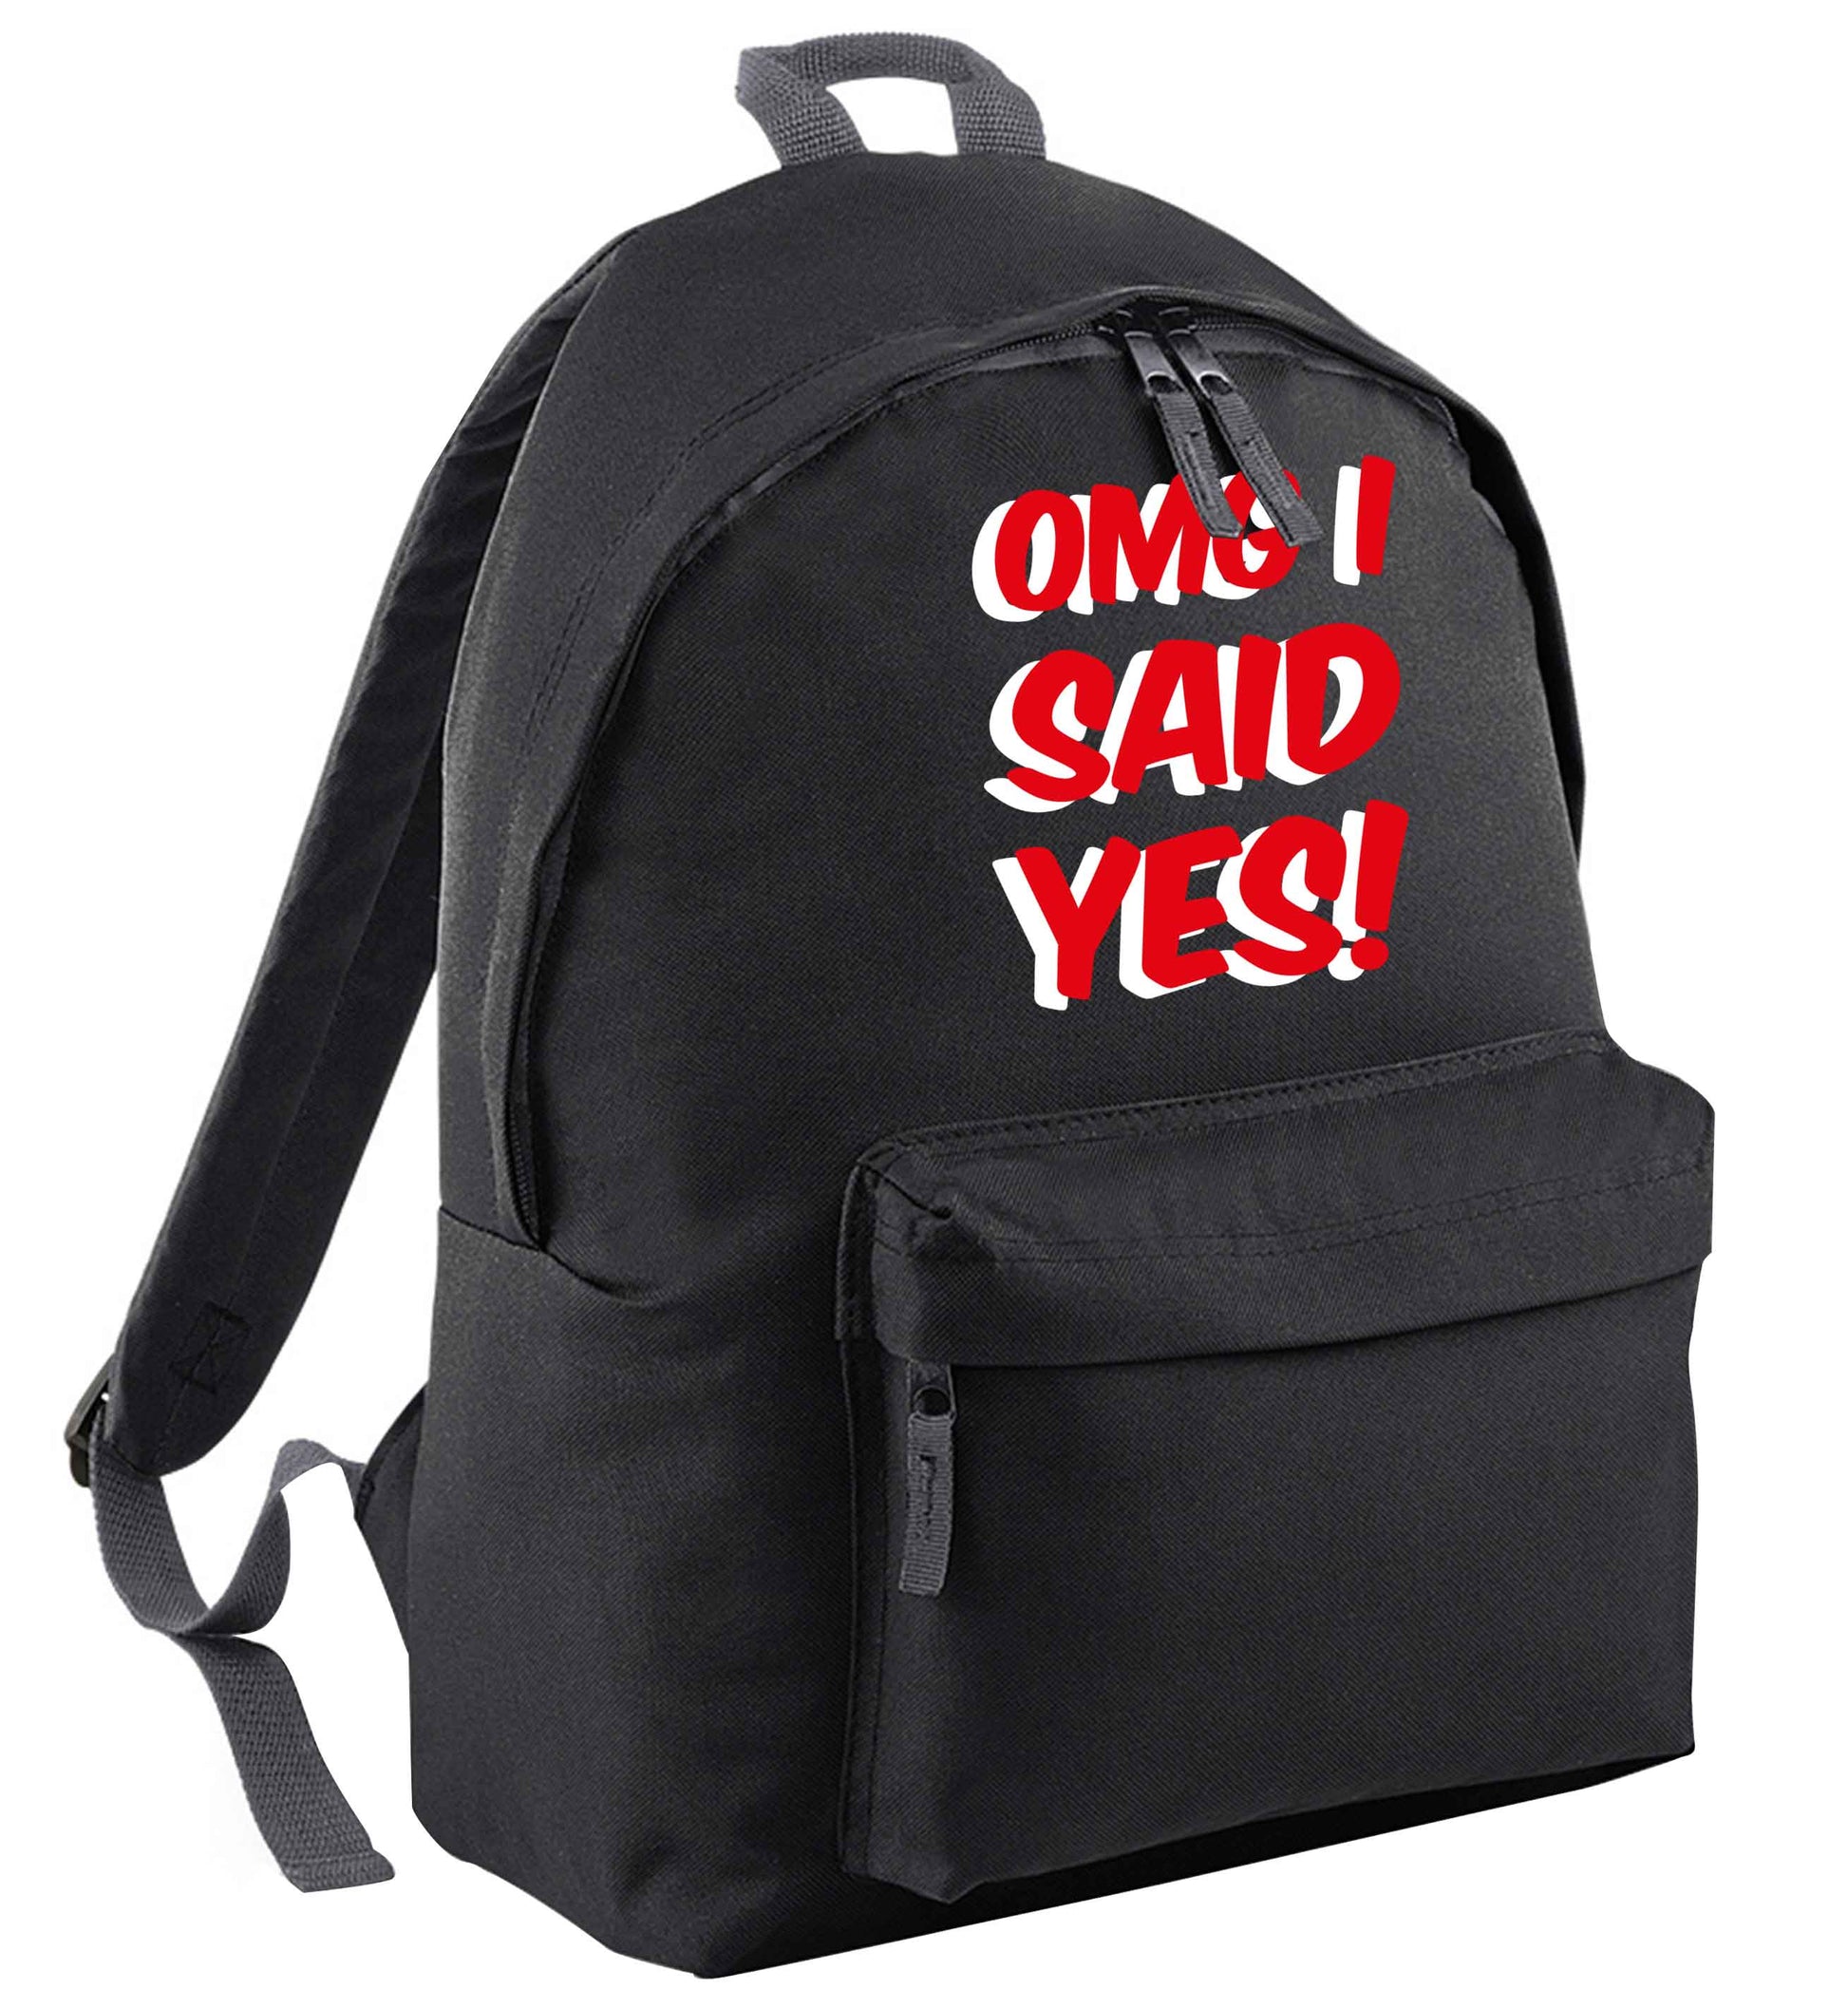 Omg I said yes black adults backpack